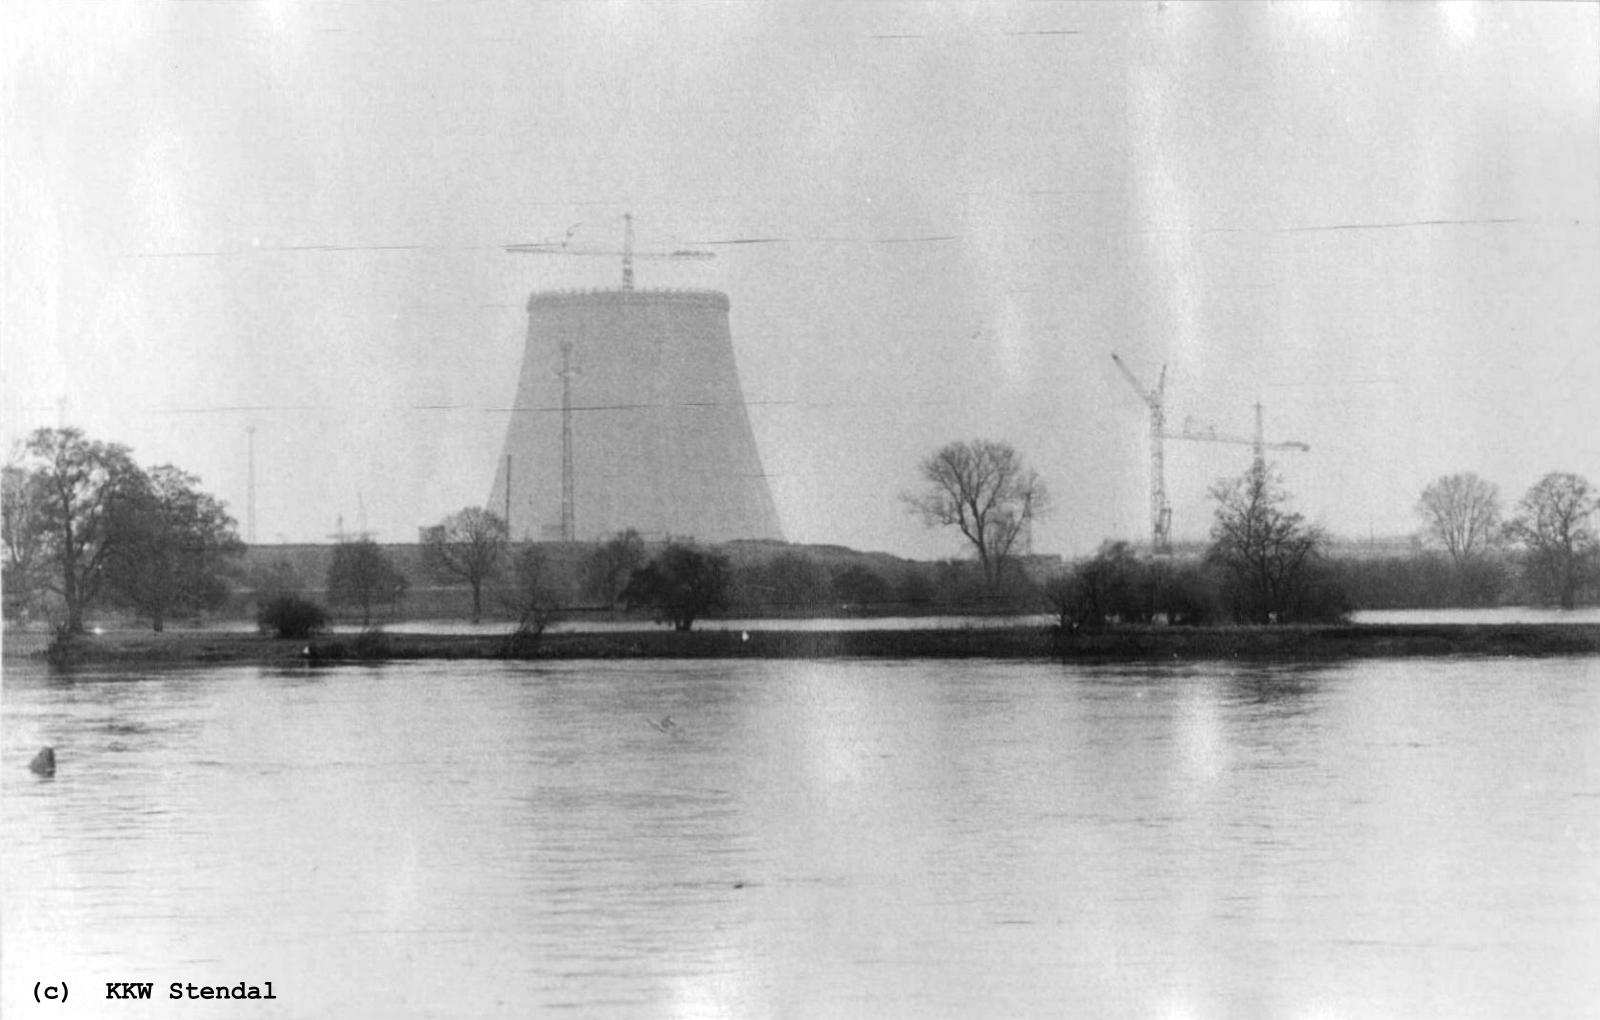  AKW Stendal, Baustelle 1988, Elbe - Hochwasser 